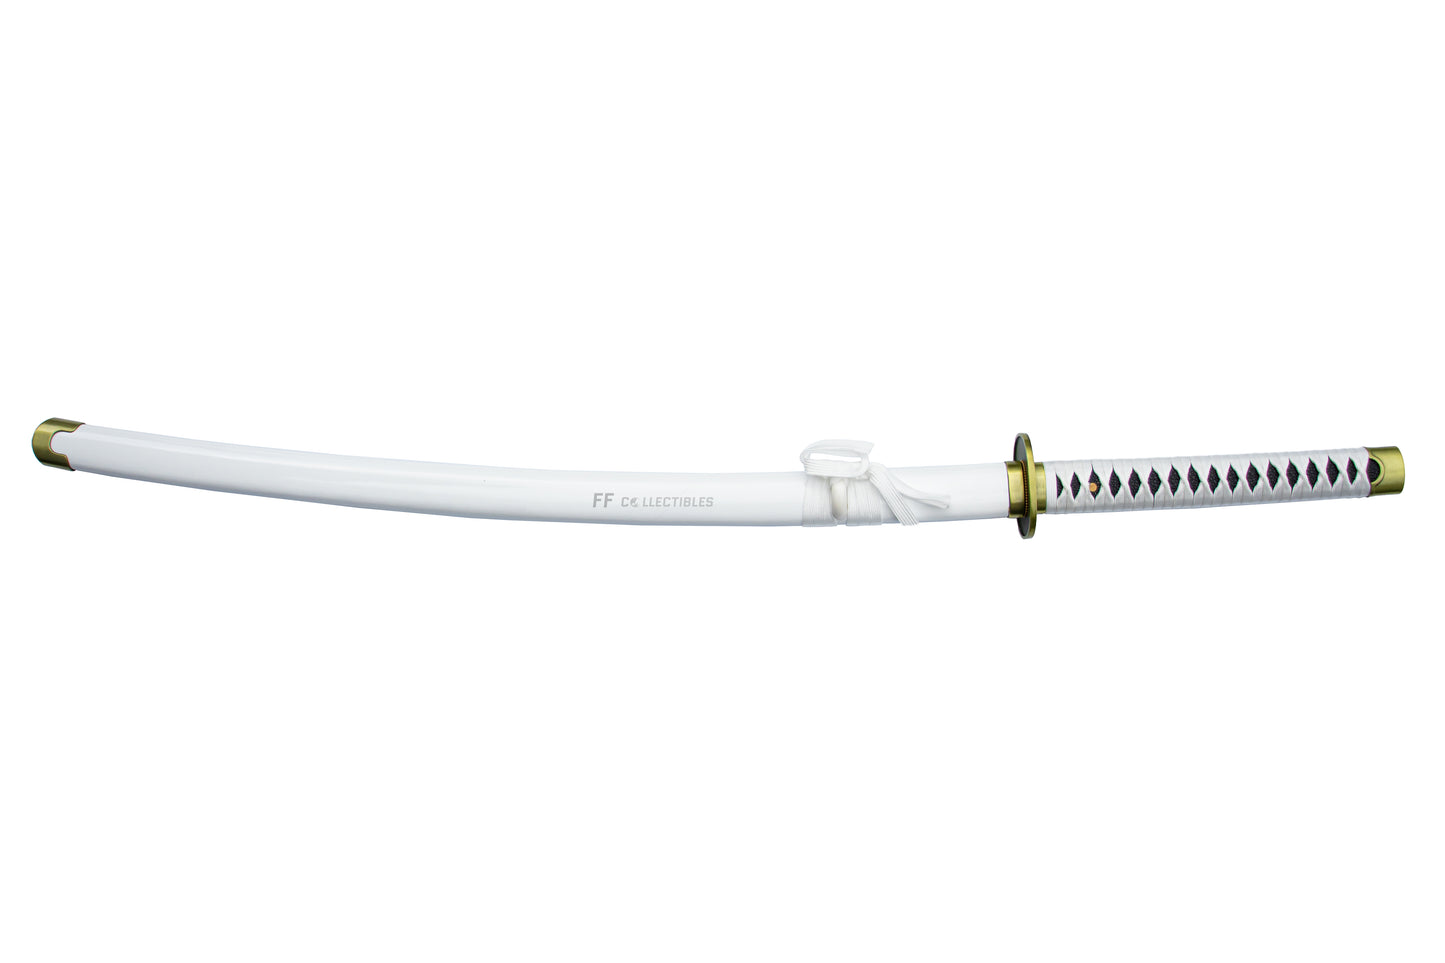 ONE PIECE – WADO ICHIMONJI, THE SWORD OF RORONOA ZORO (w FREE sword stand)